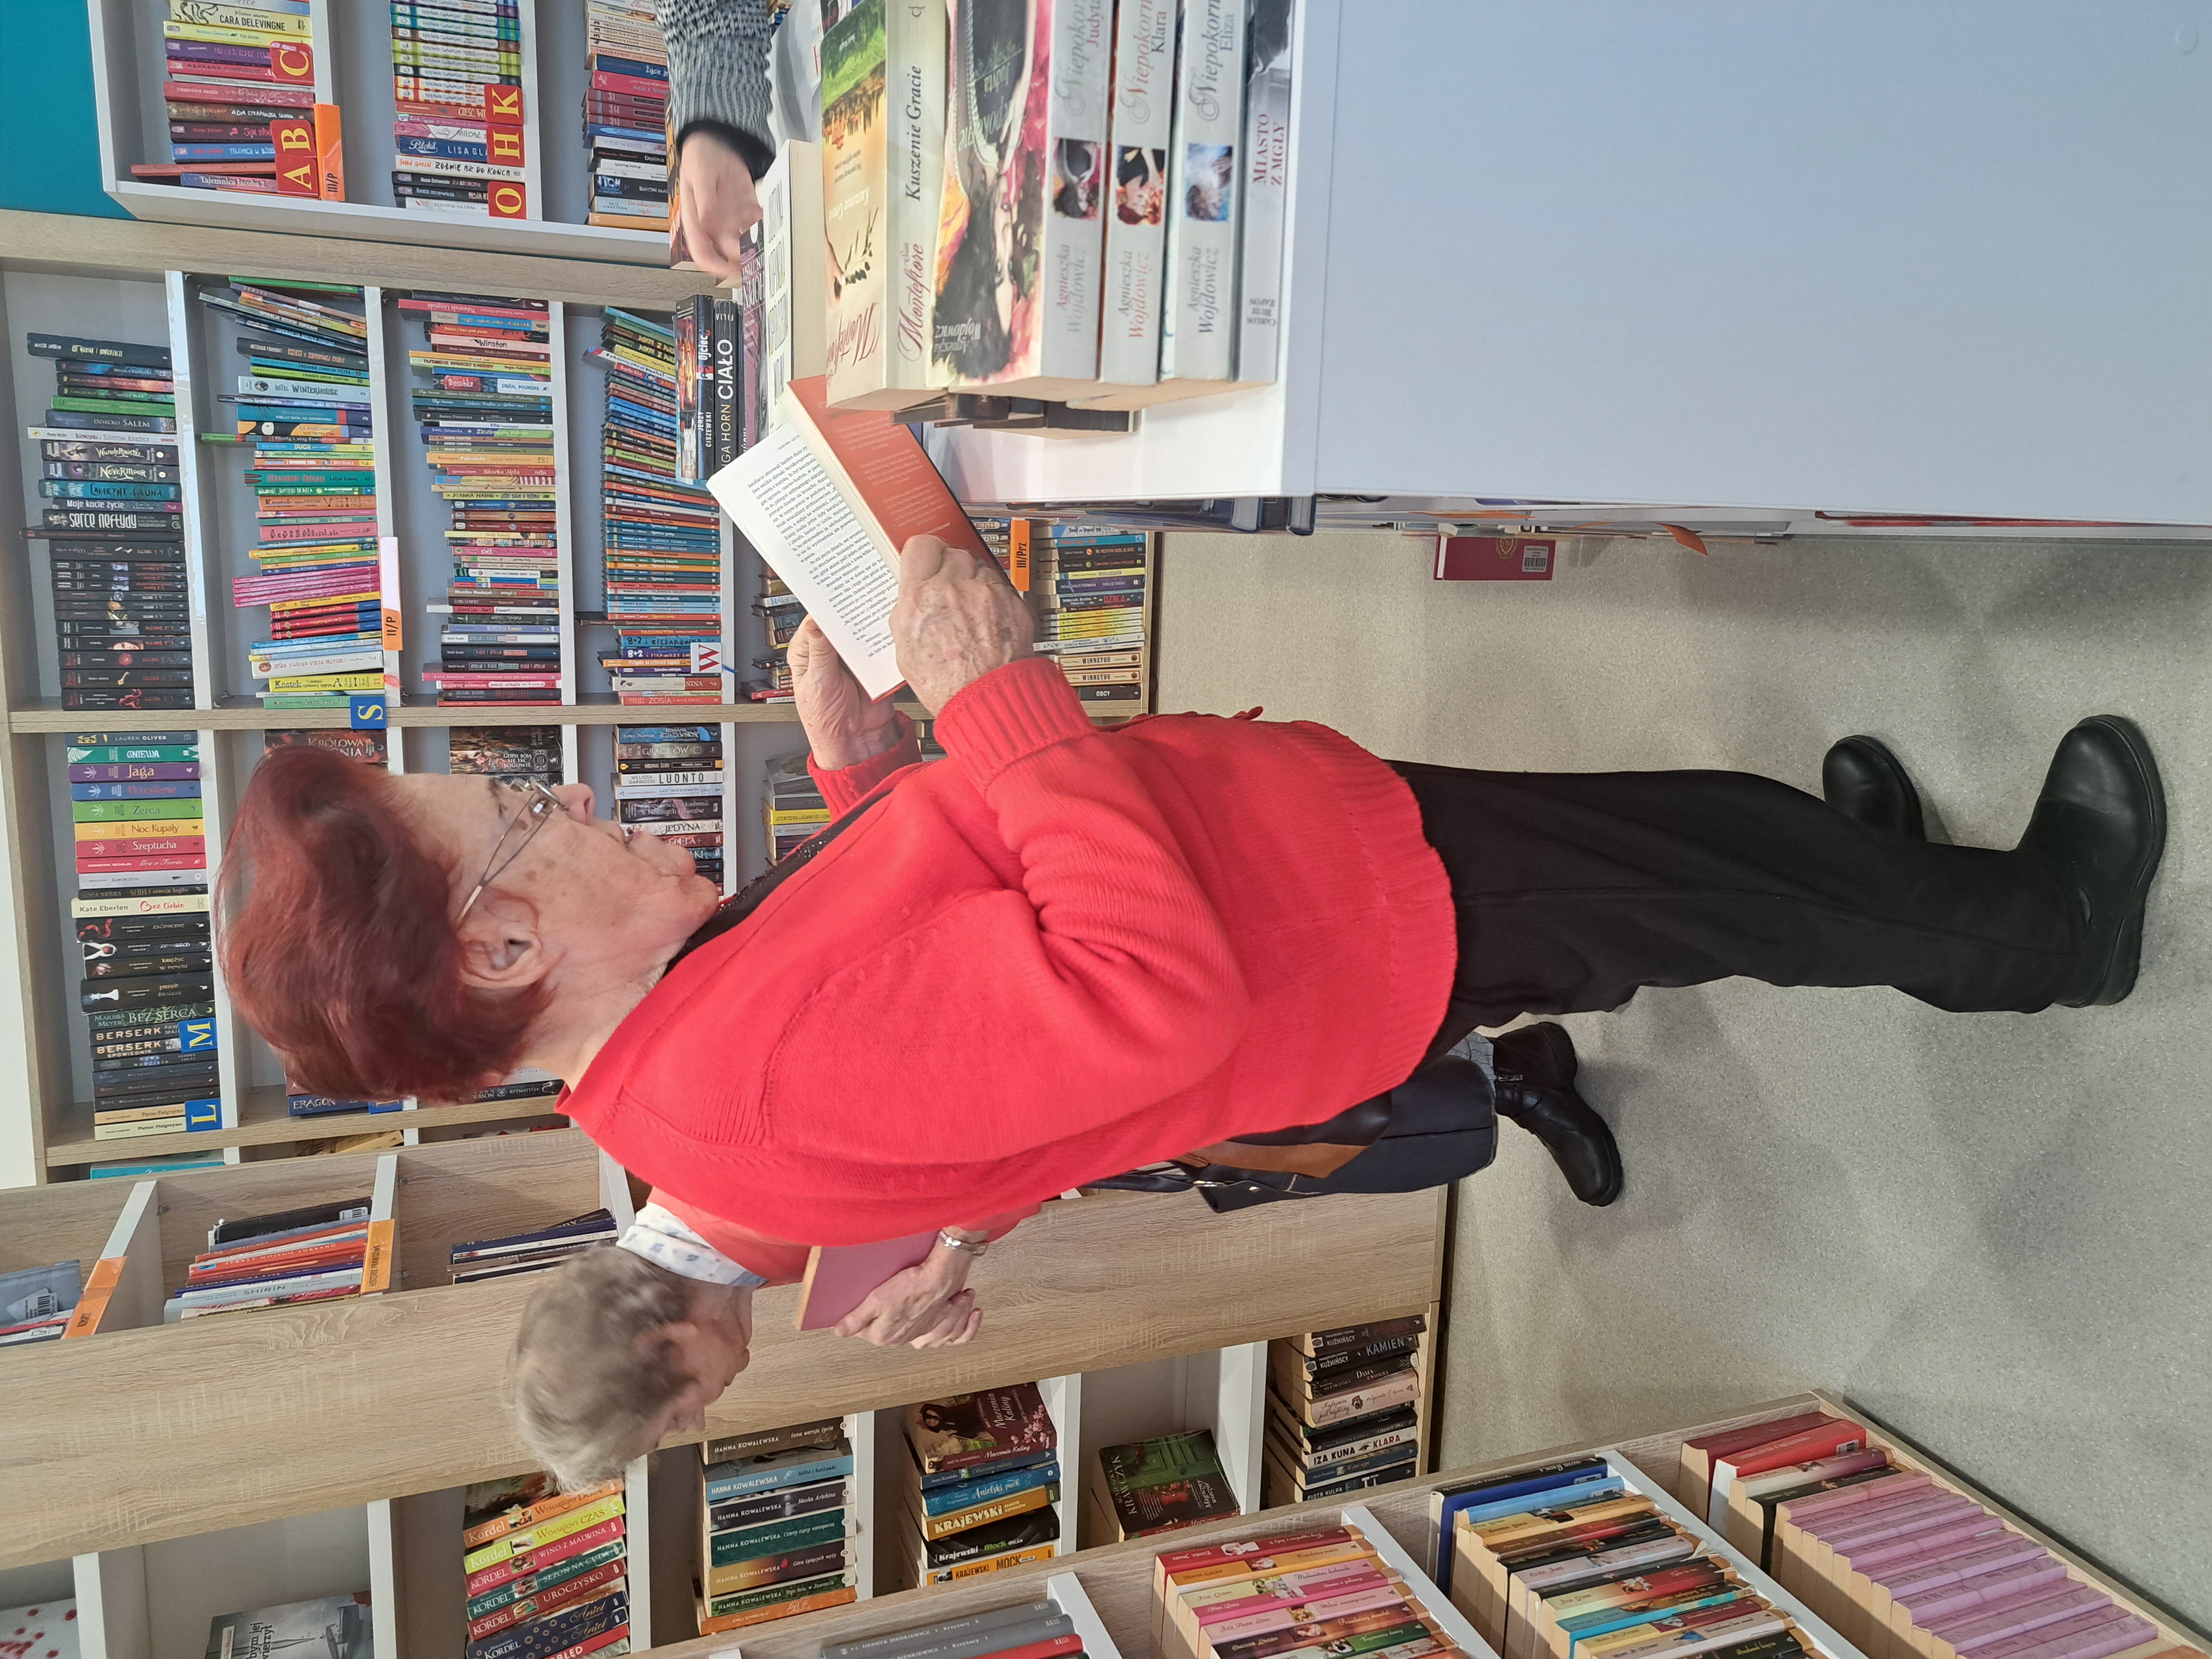 Seniorka stoi przy regale z książkami, jedną z książek przegląda